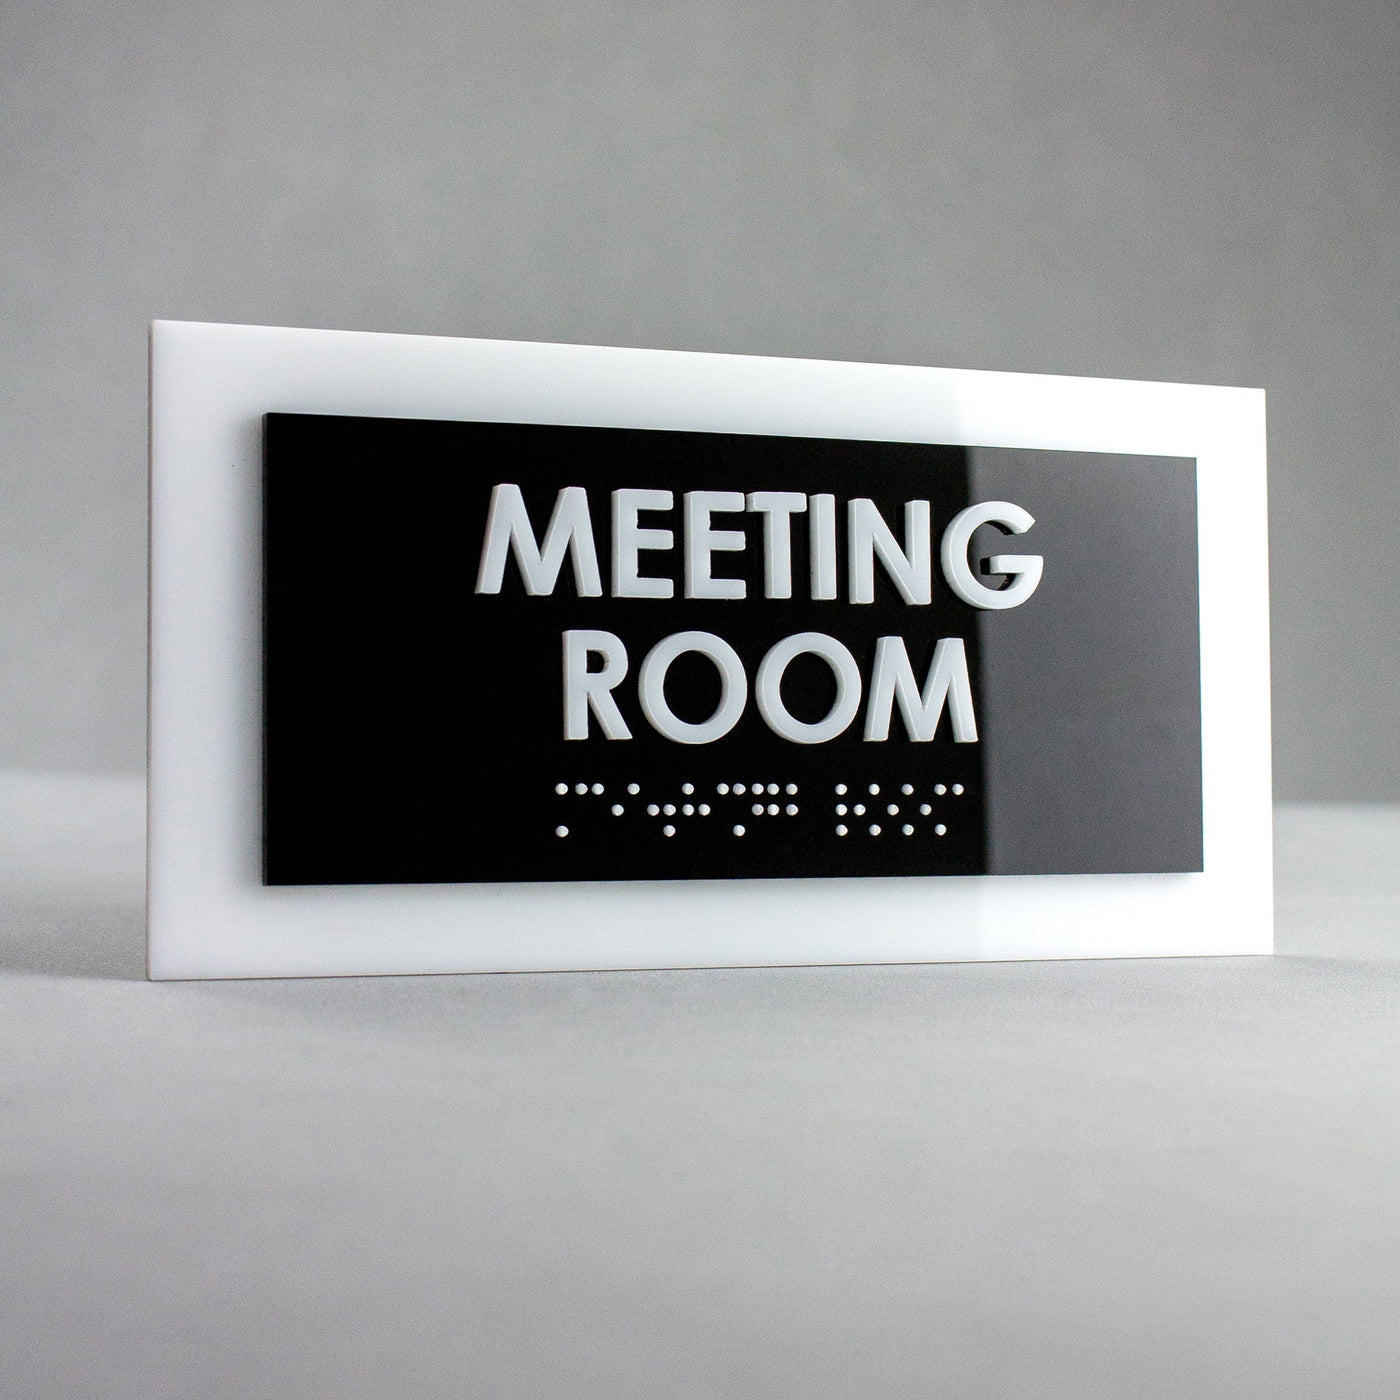 Door Signs - Mechanical Room Sign - Acrylic Door Plate "Simple" Design